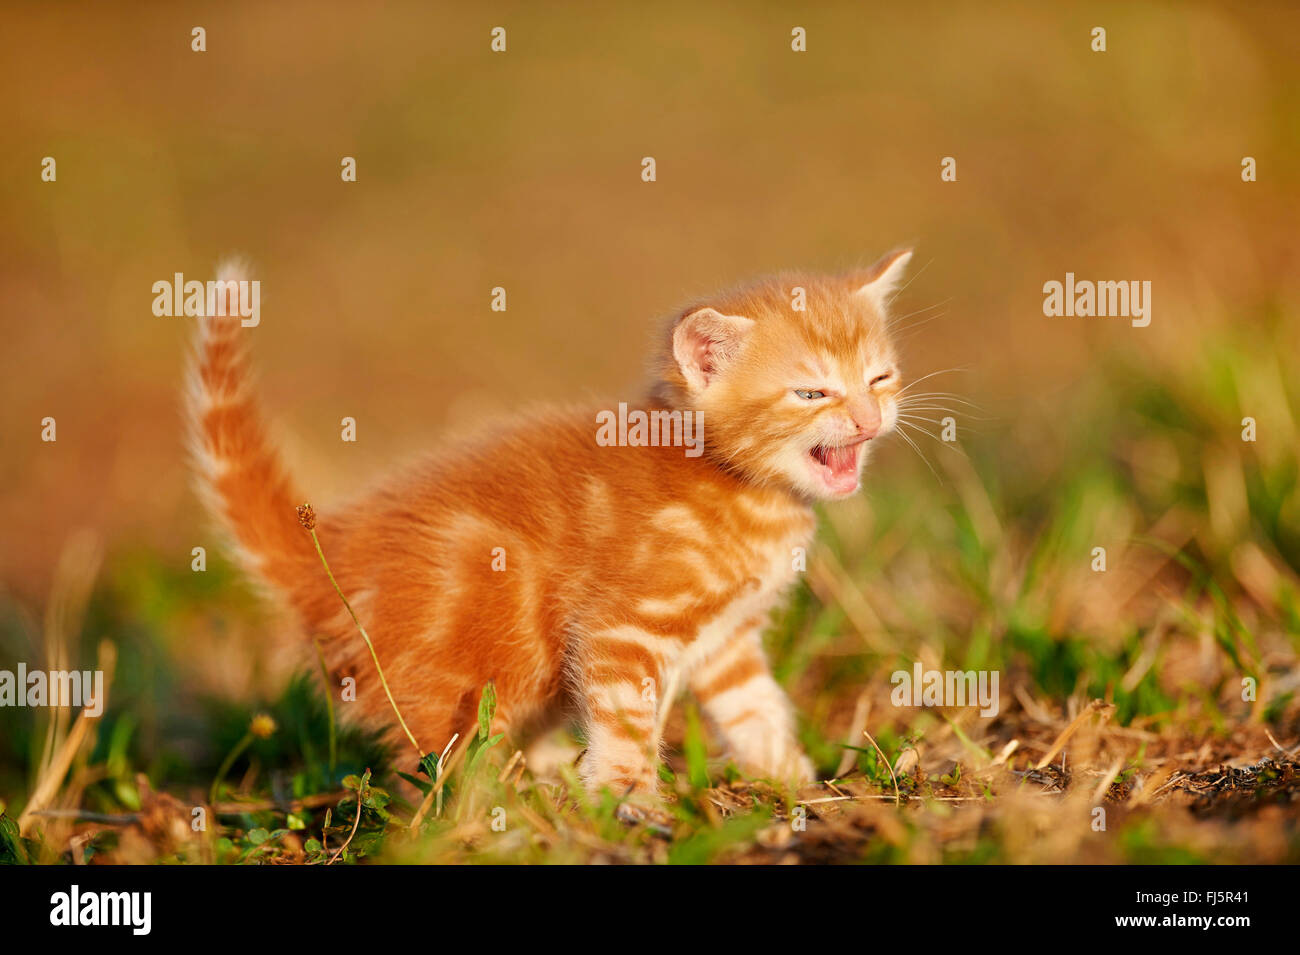 Chat domestique, le chat domestique (Felis silvestris catus), f. cinq semaines miaowing chaton dans un pré, Allemagne Banque D'Images